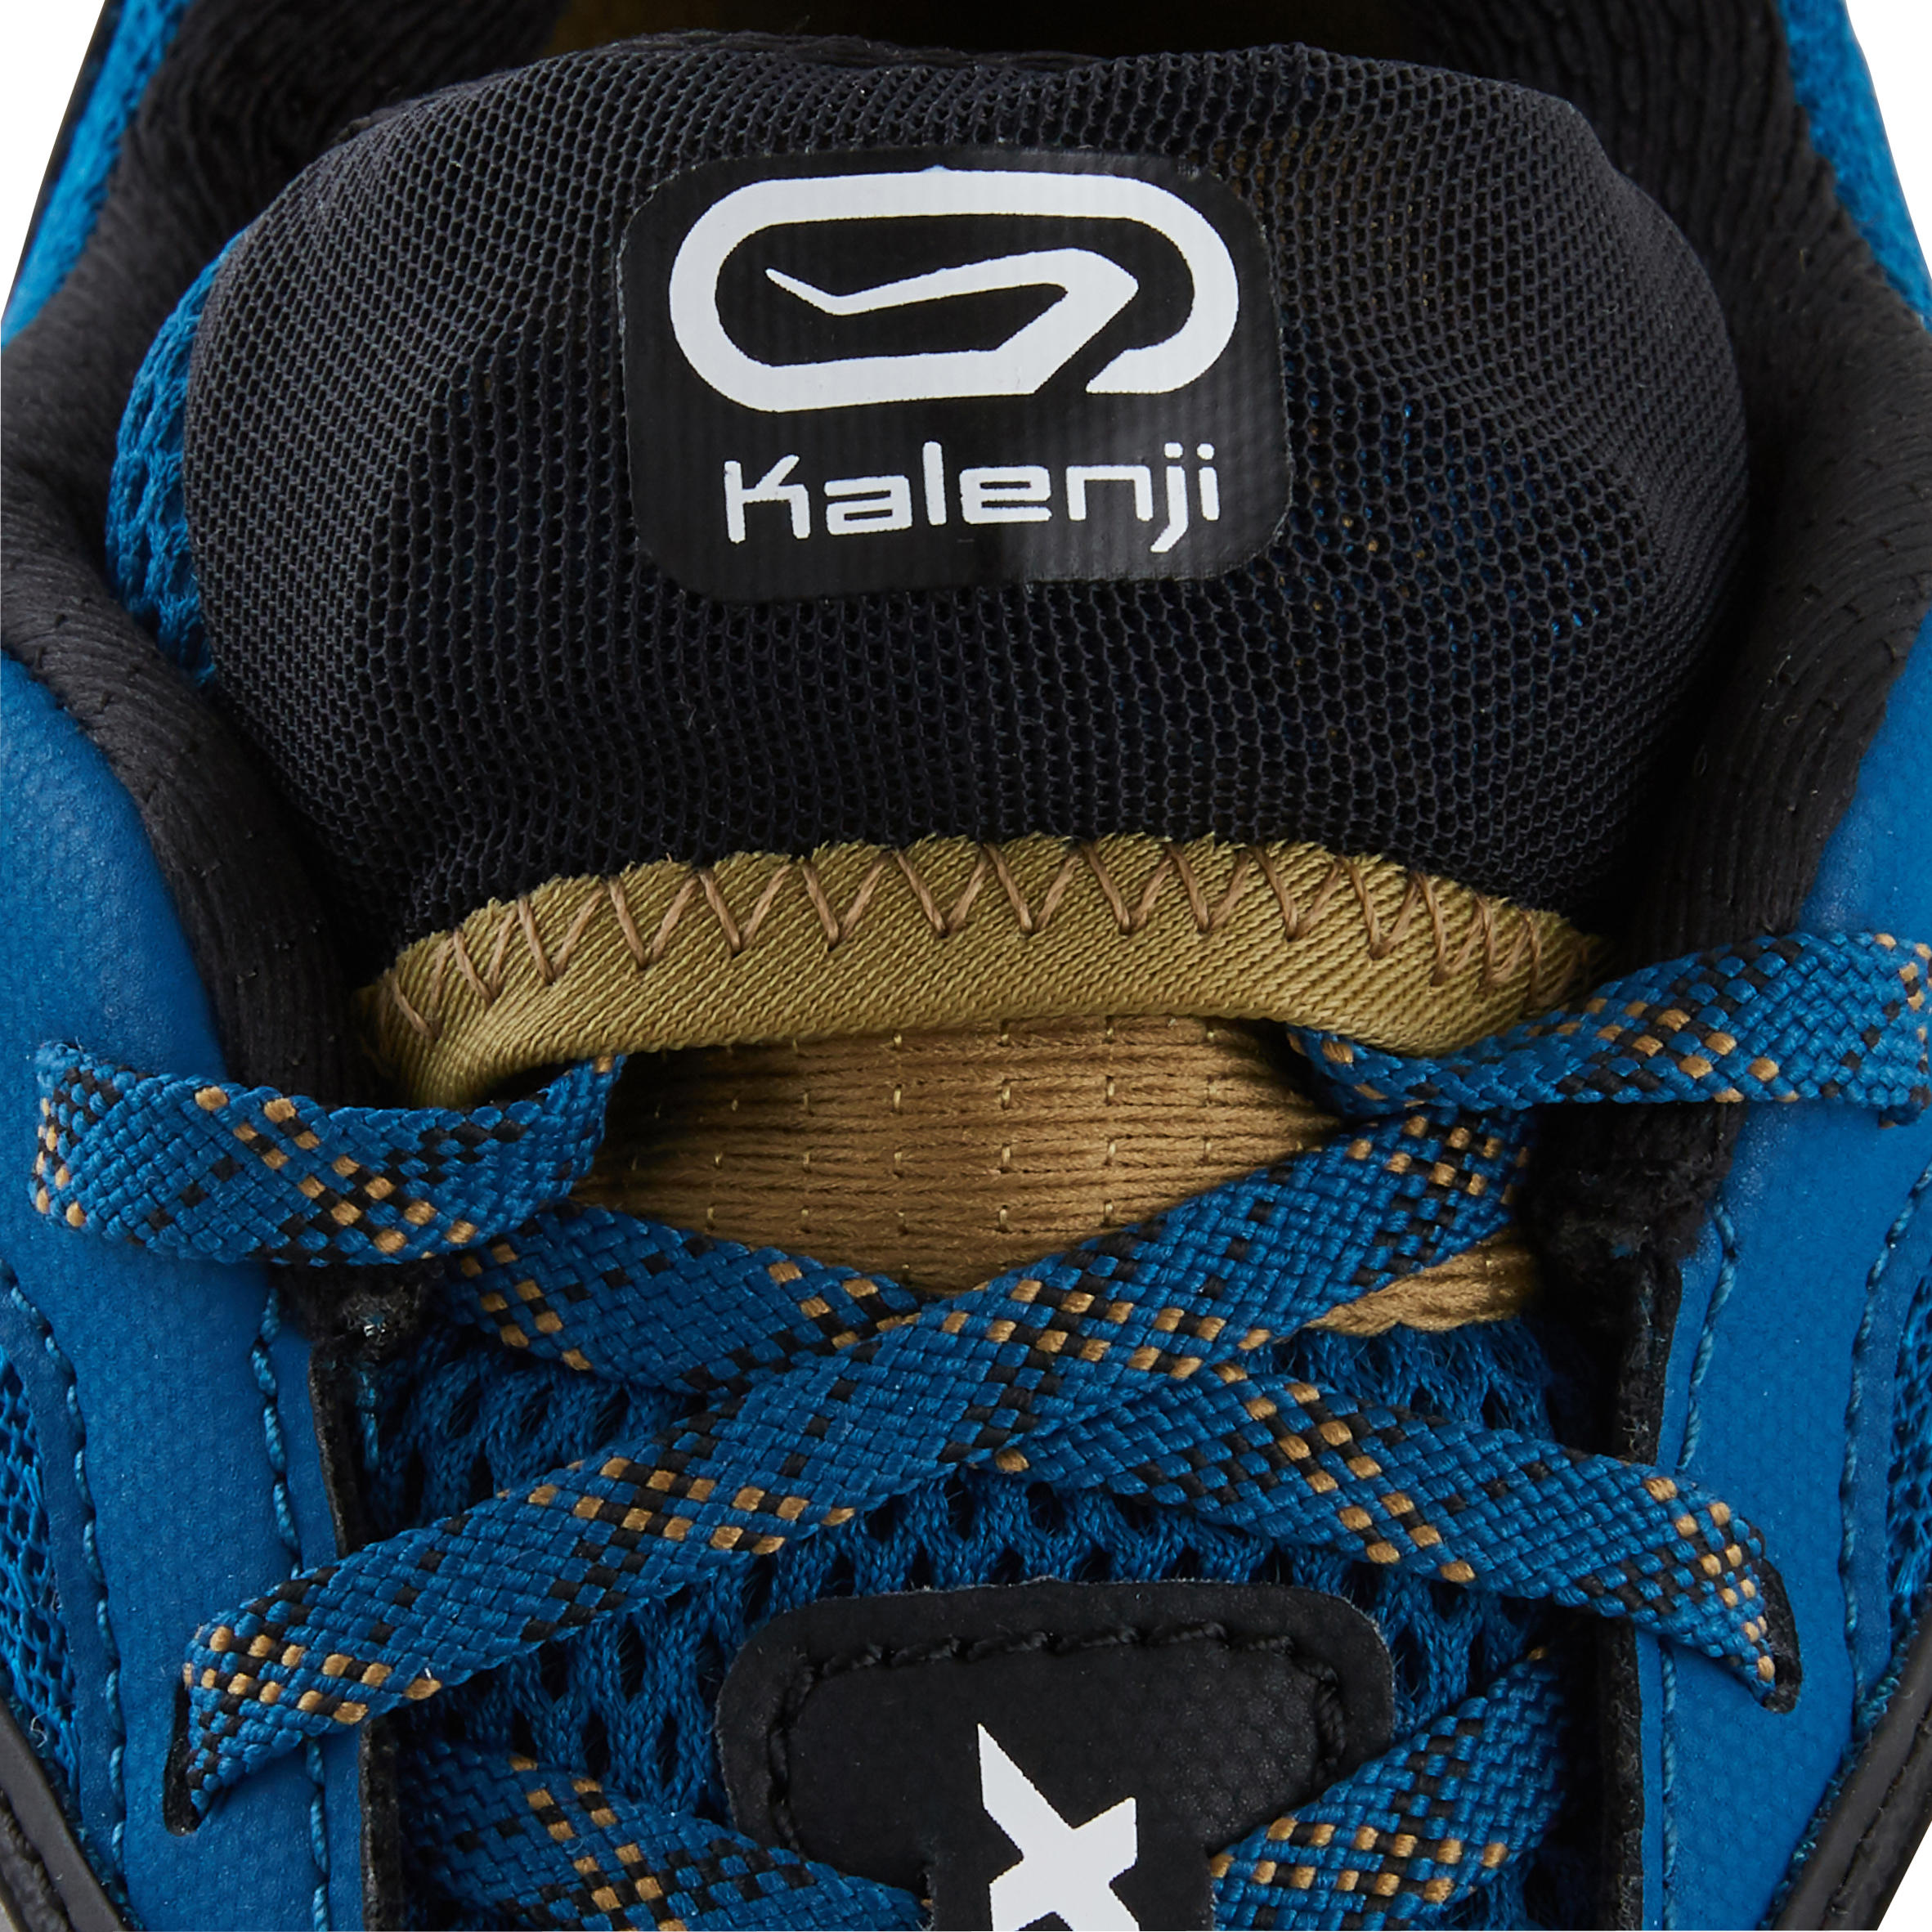 kalenji trail shoes